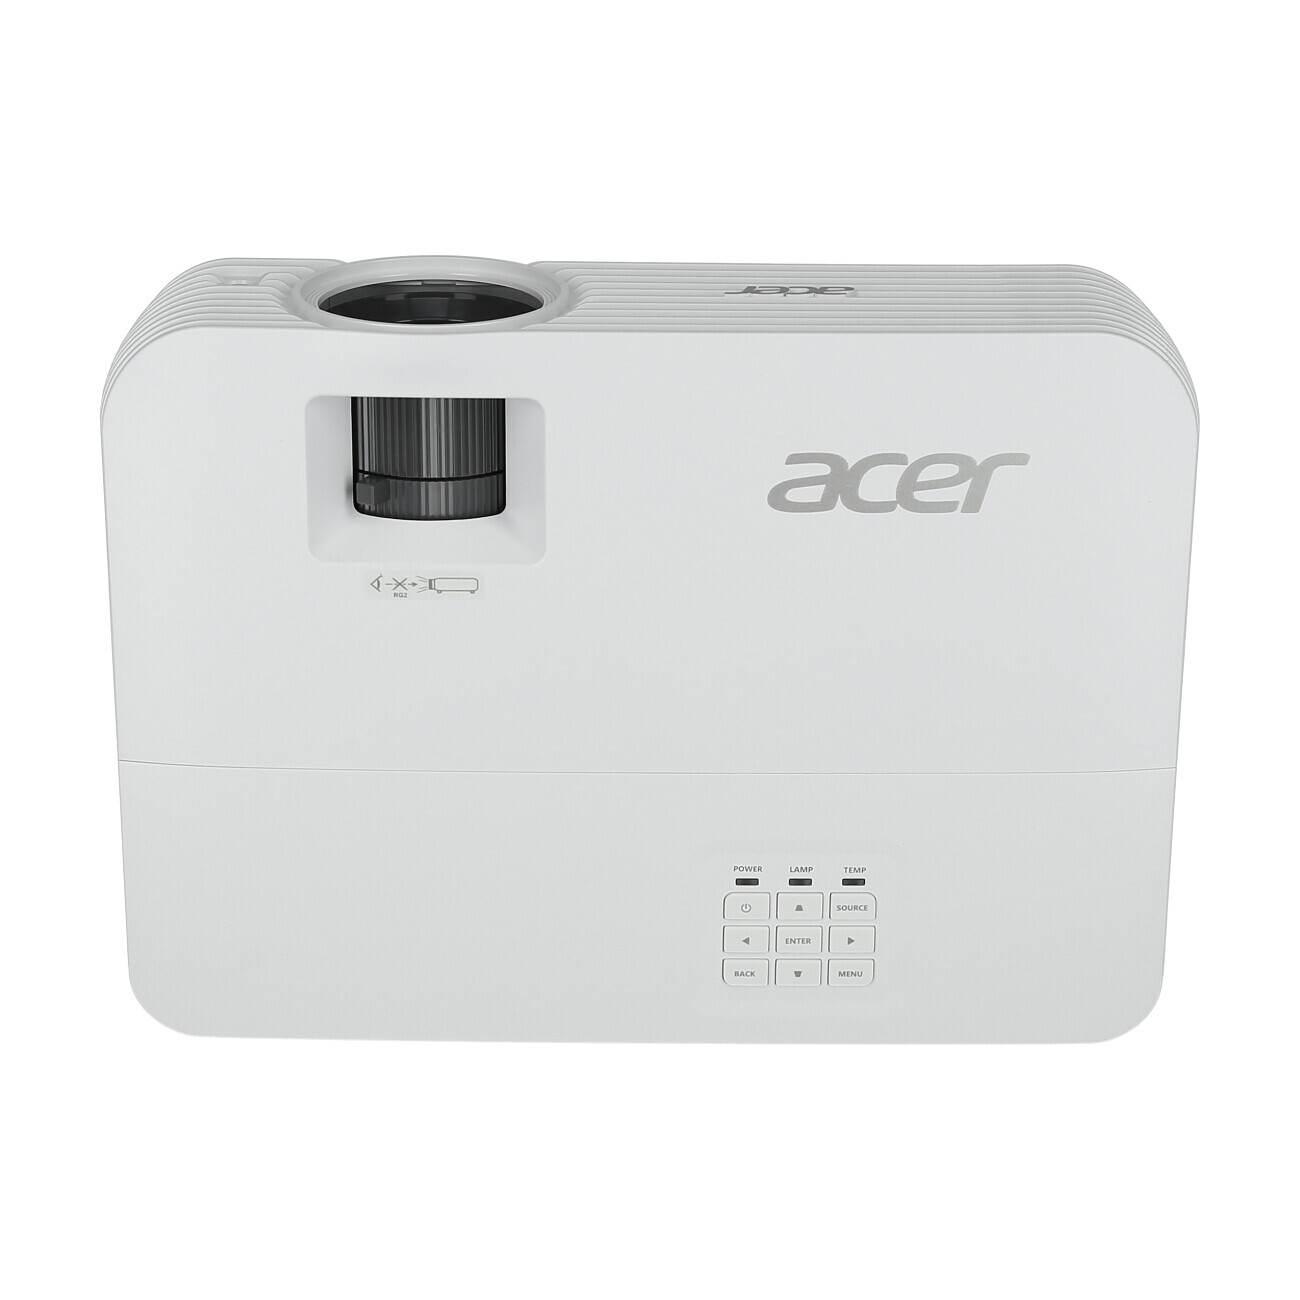 Vorschau: Acer H6542BDK Heimkino Beamer mit 4000 ANSI-Lumen und Full-HD Auflösung - Demo